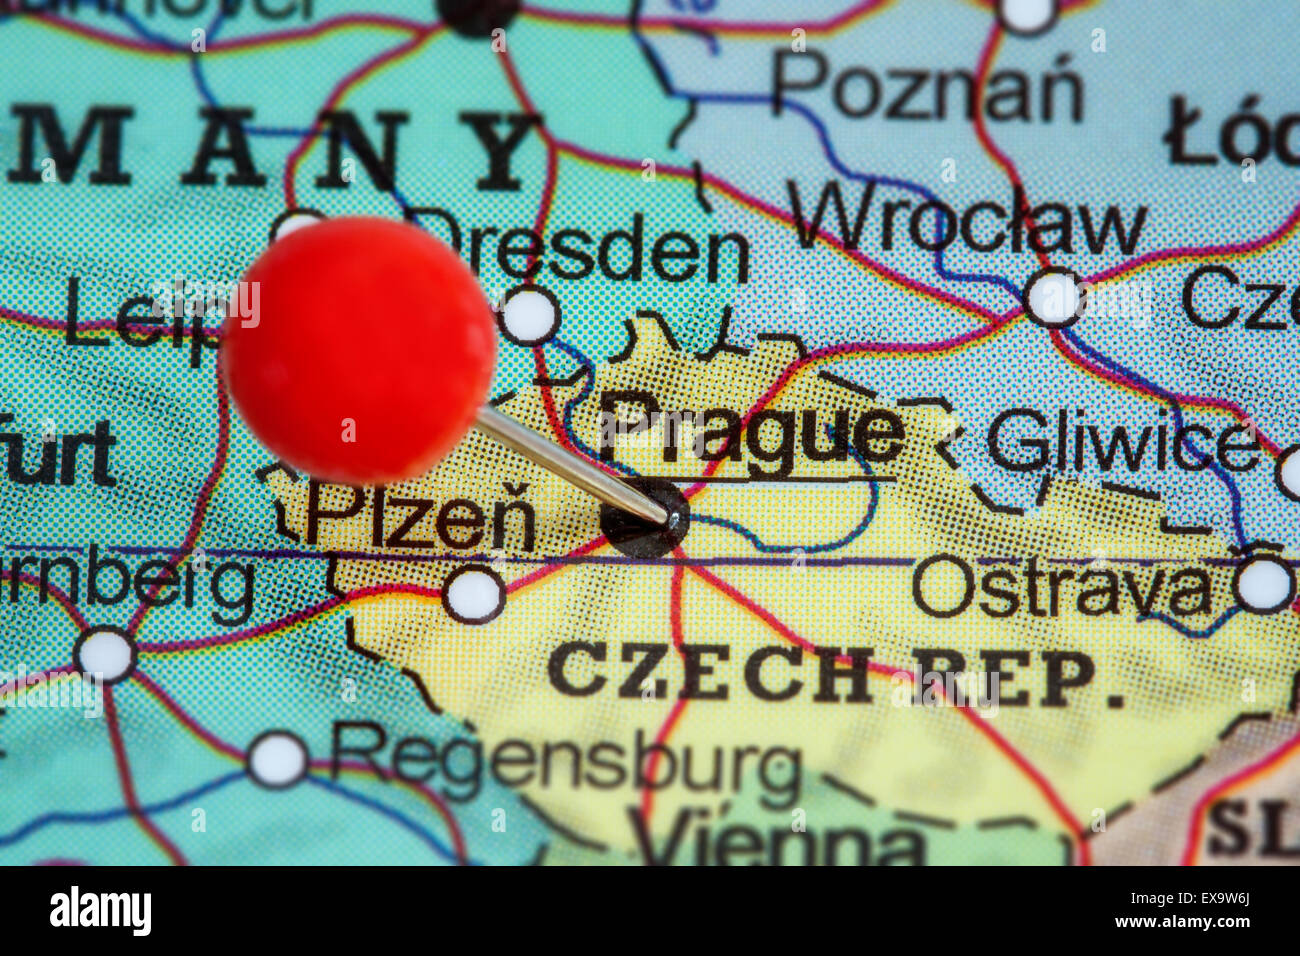 Map of prague czech republic